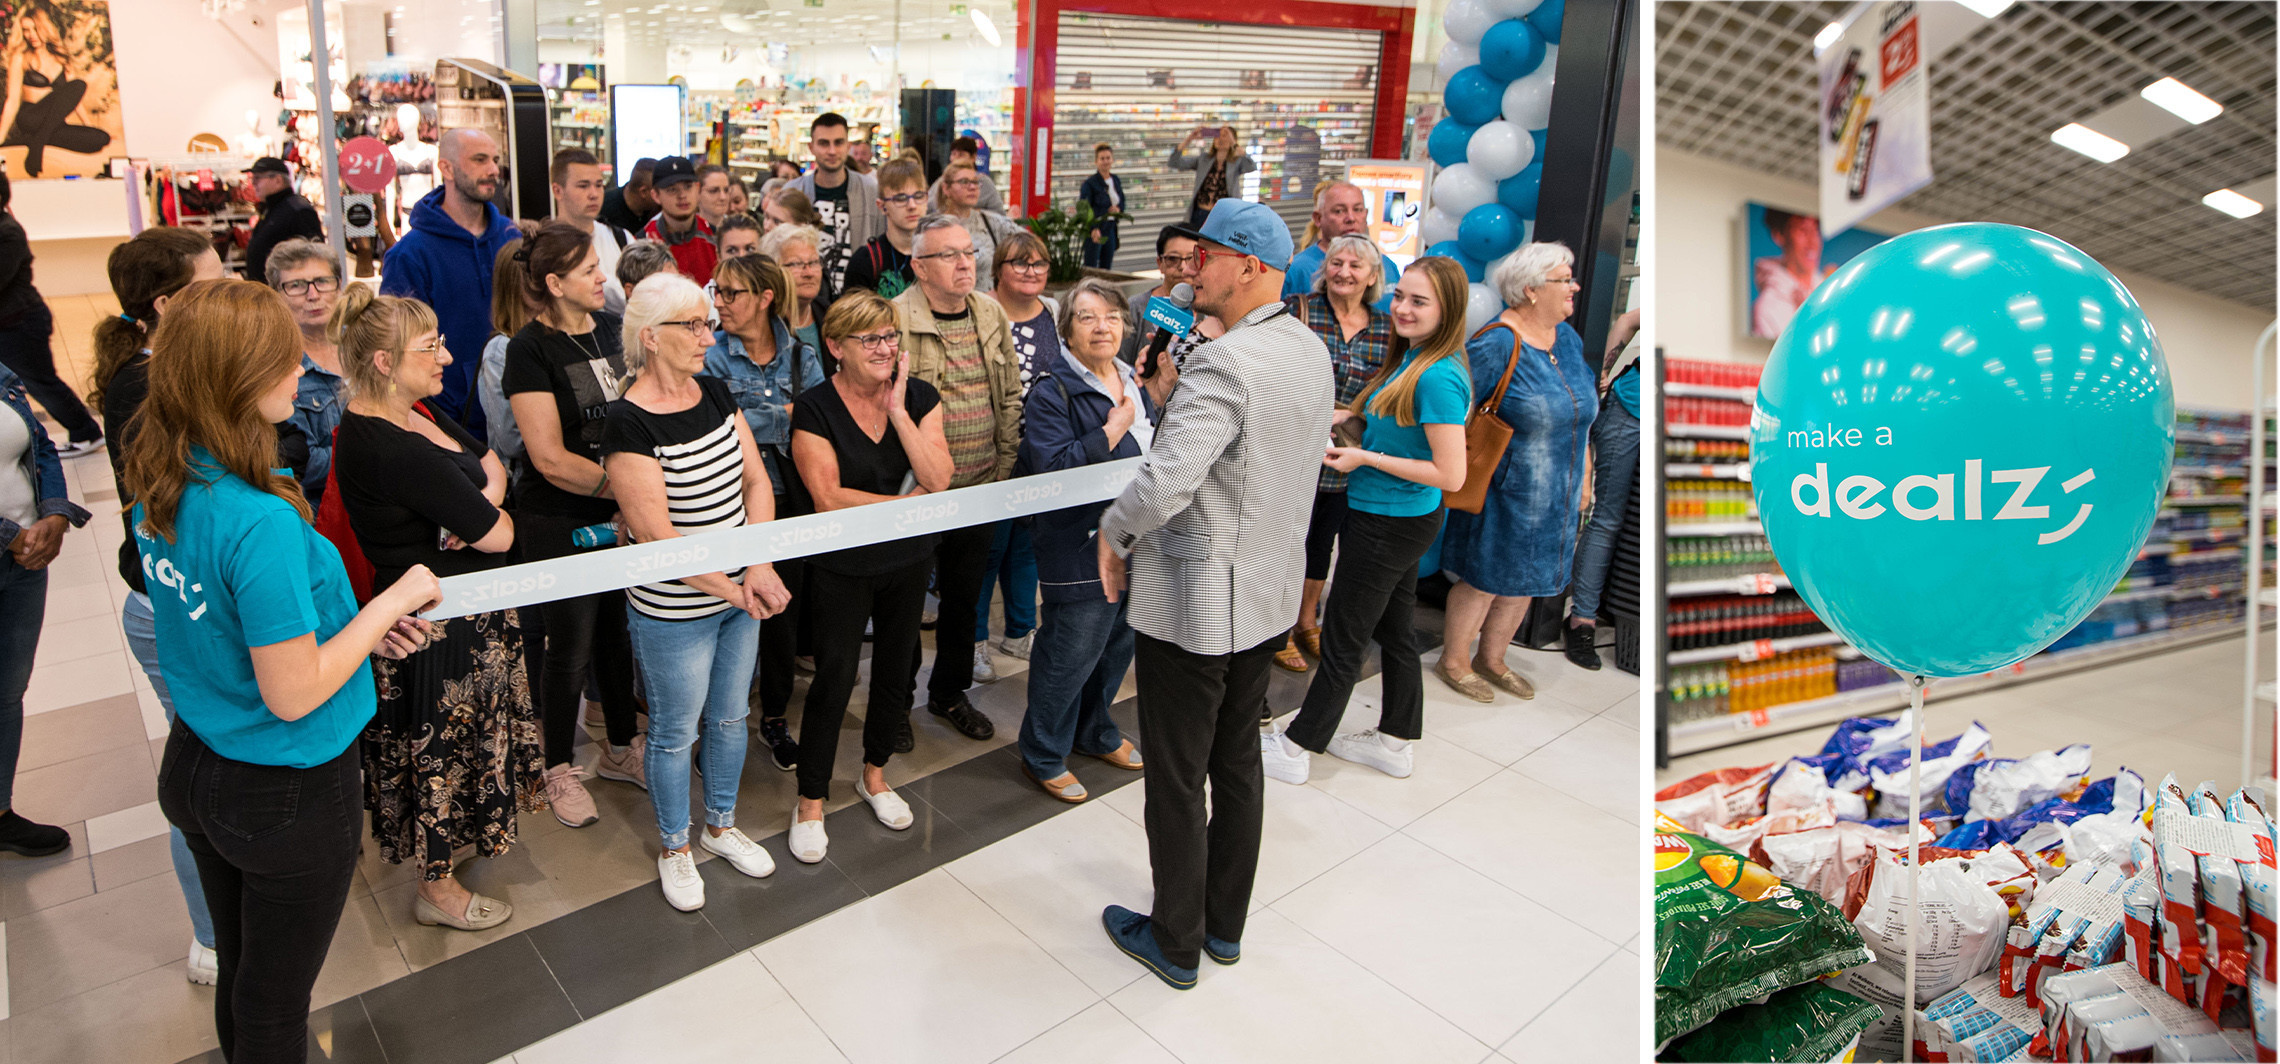 Inowrocław - Wielkie otwarcie sklepu Dealz w Inowrocławiu!